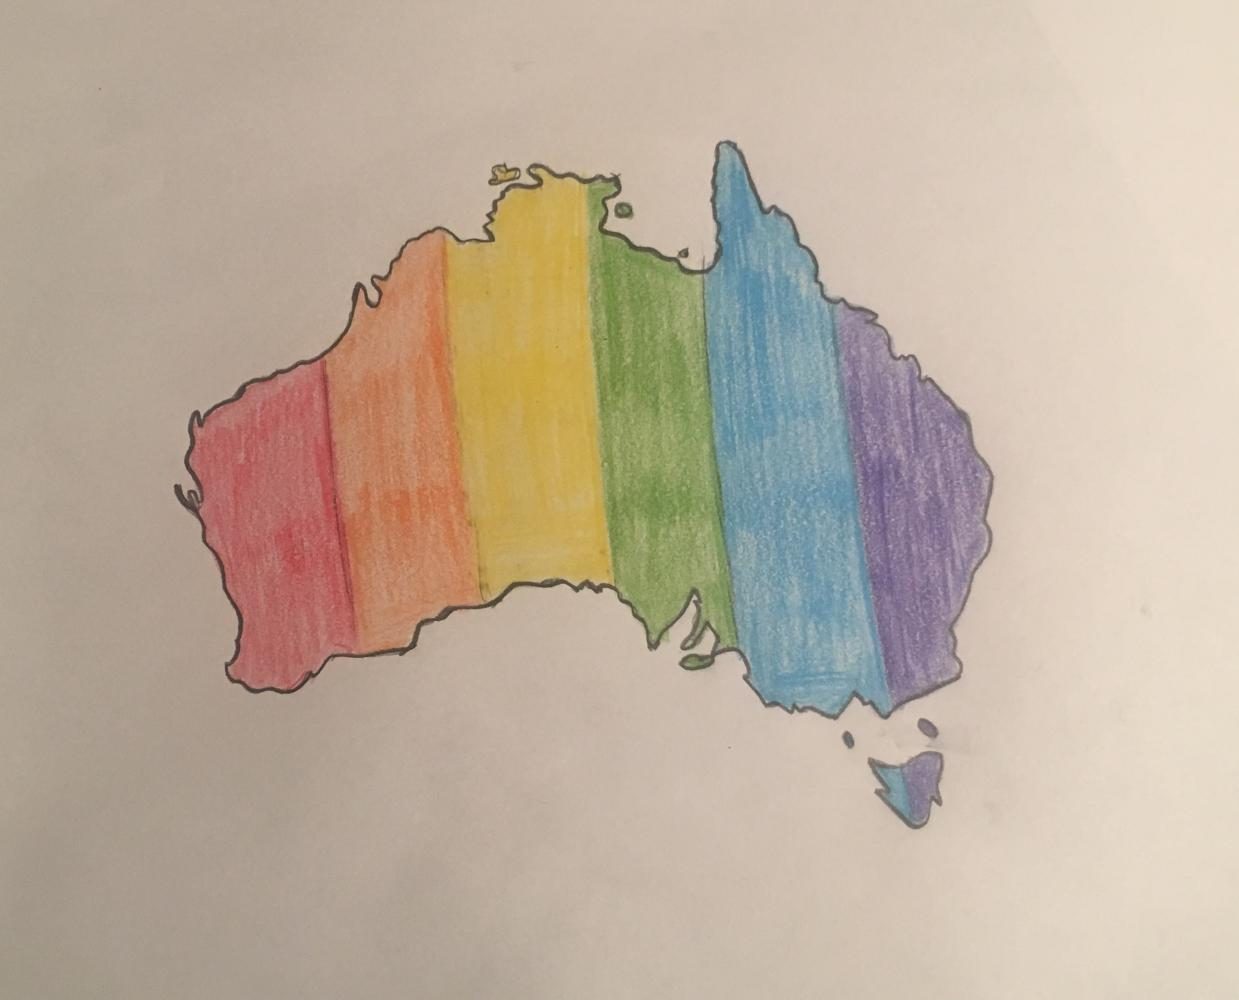 Australia+votes+%E2%80%98yes%E2%80%99+on+same-sex+marriage